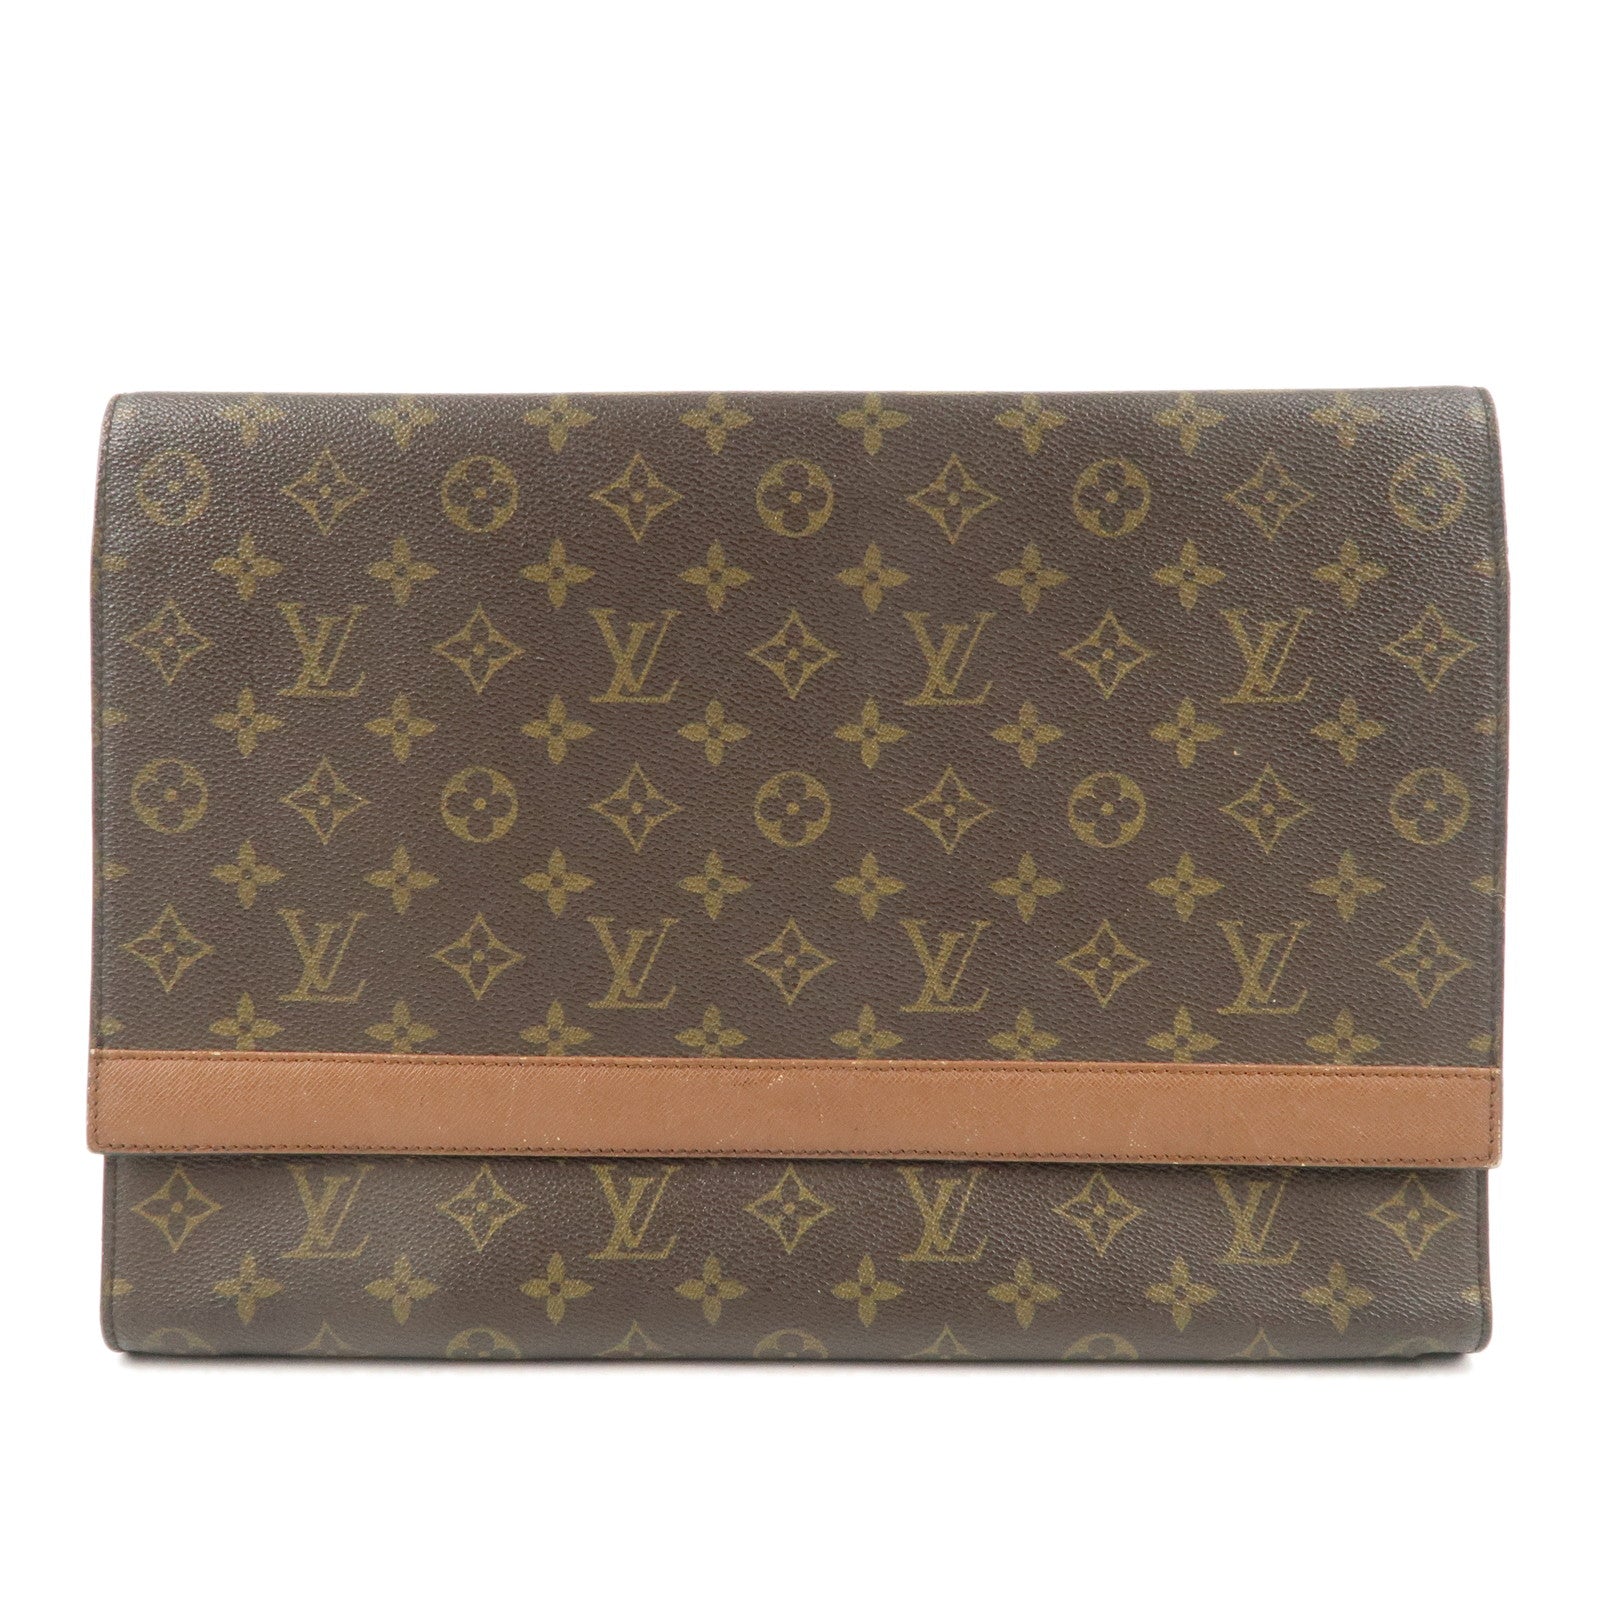 Vintage 1980's Louis Vuitton Envelope Handbag Clutch Leather Lined Louis  Vuitton Clutch Purse - Etsy